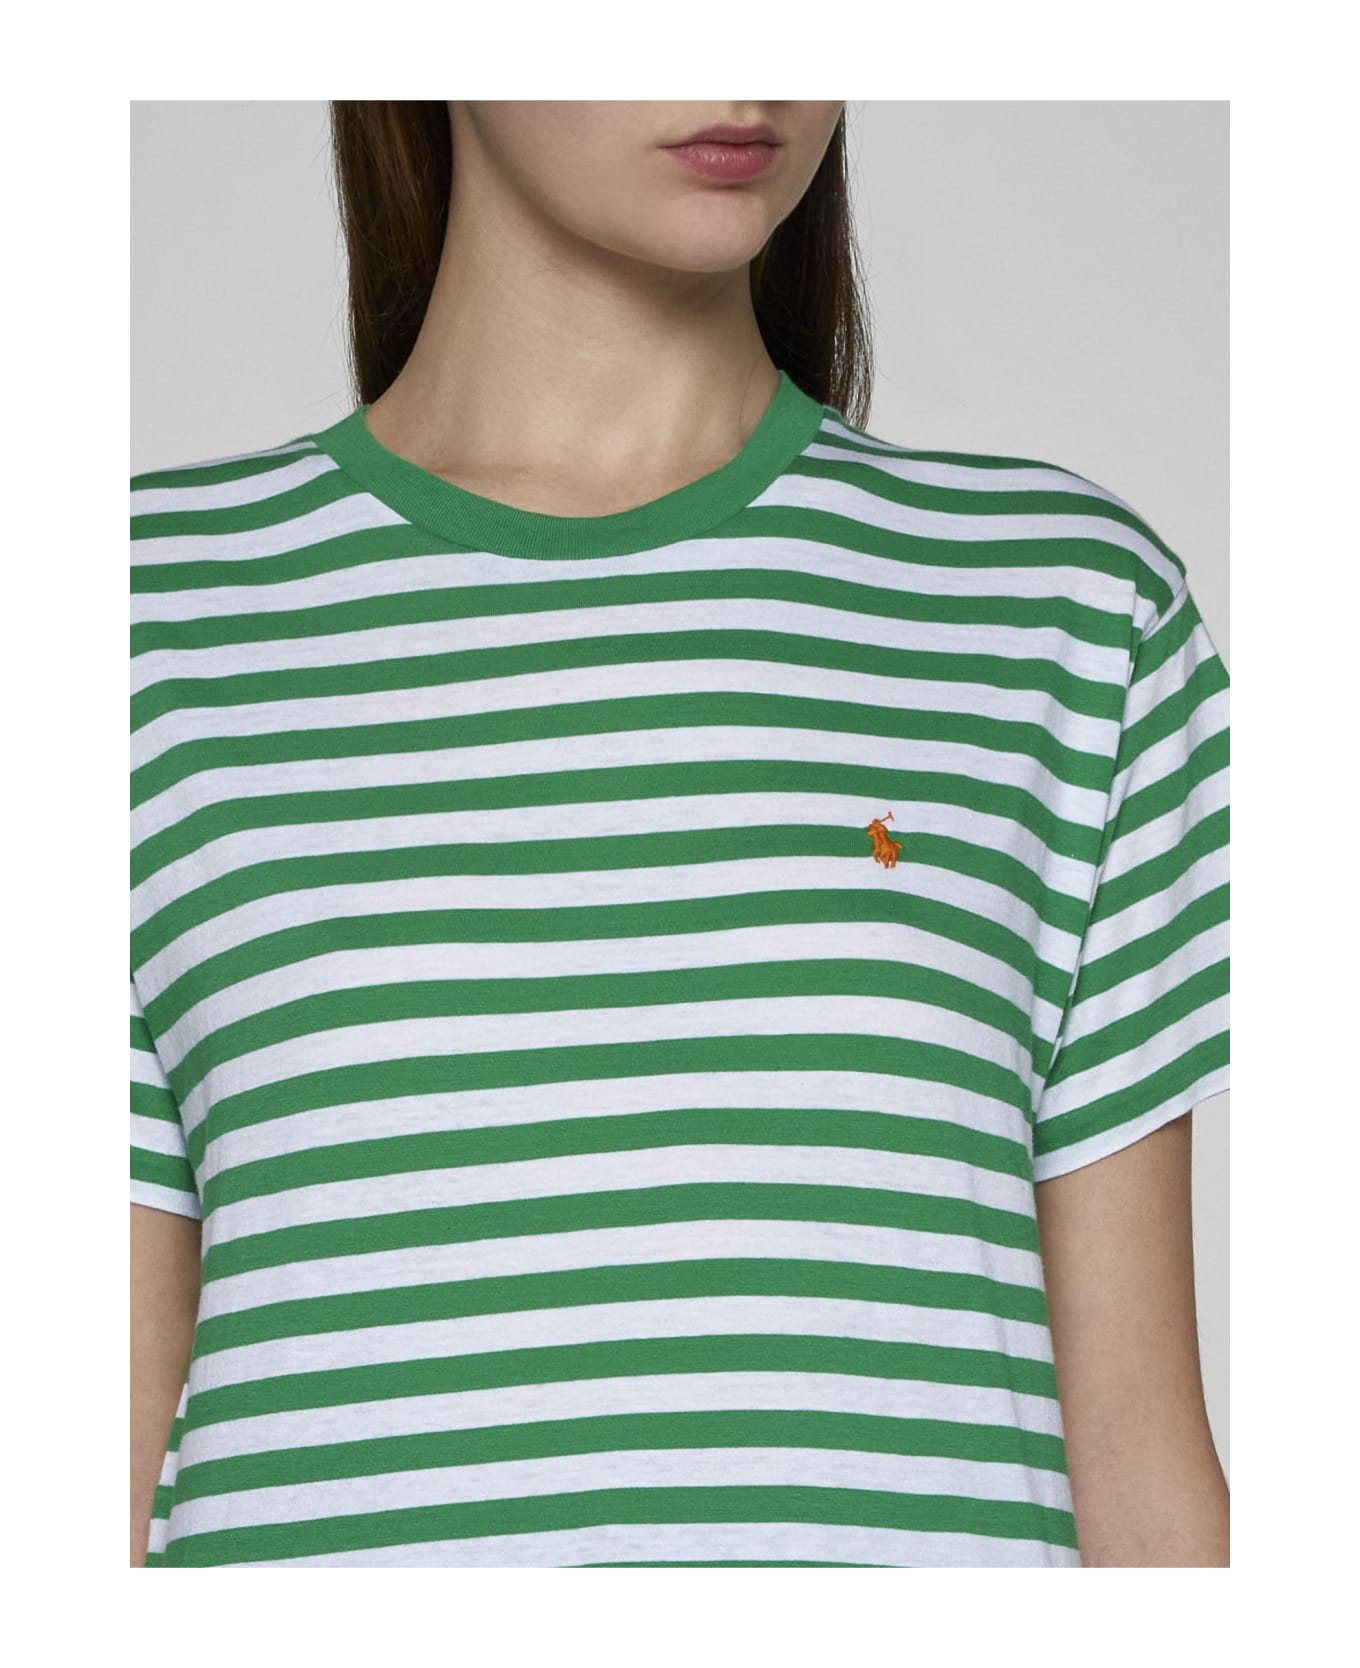 Polo Ralph Lauren Striped Cotton T-shirt - Green